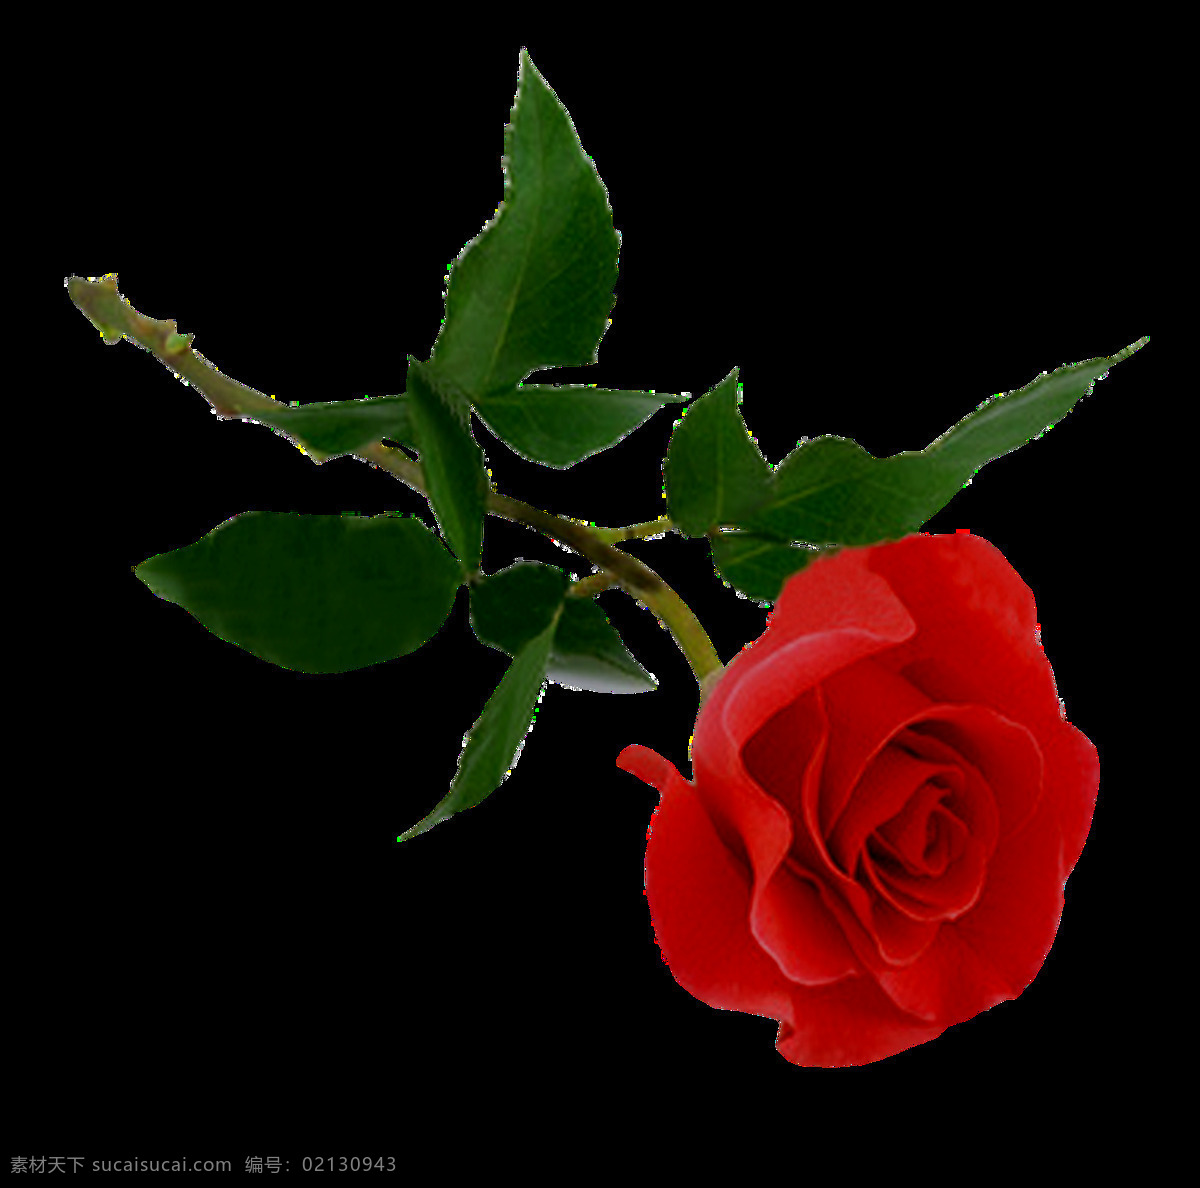 玫瑰图片 玫瑰 白玫瑰 红玫瑰 蓝玫瑰 玫瑰花 黄玫瑰 鲜花 花朵 花 植物 花瓣 花卉 png图 透明图 免扣图 透明背景 透明底 抠图 生物世界 花草